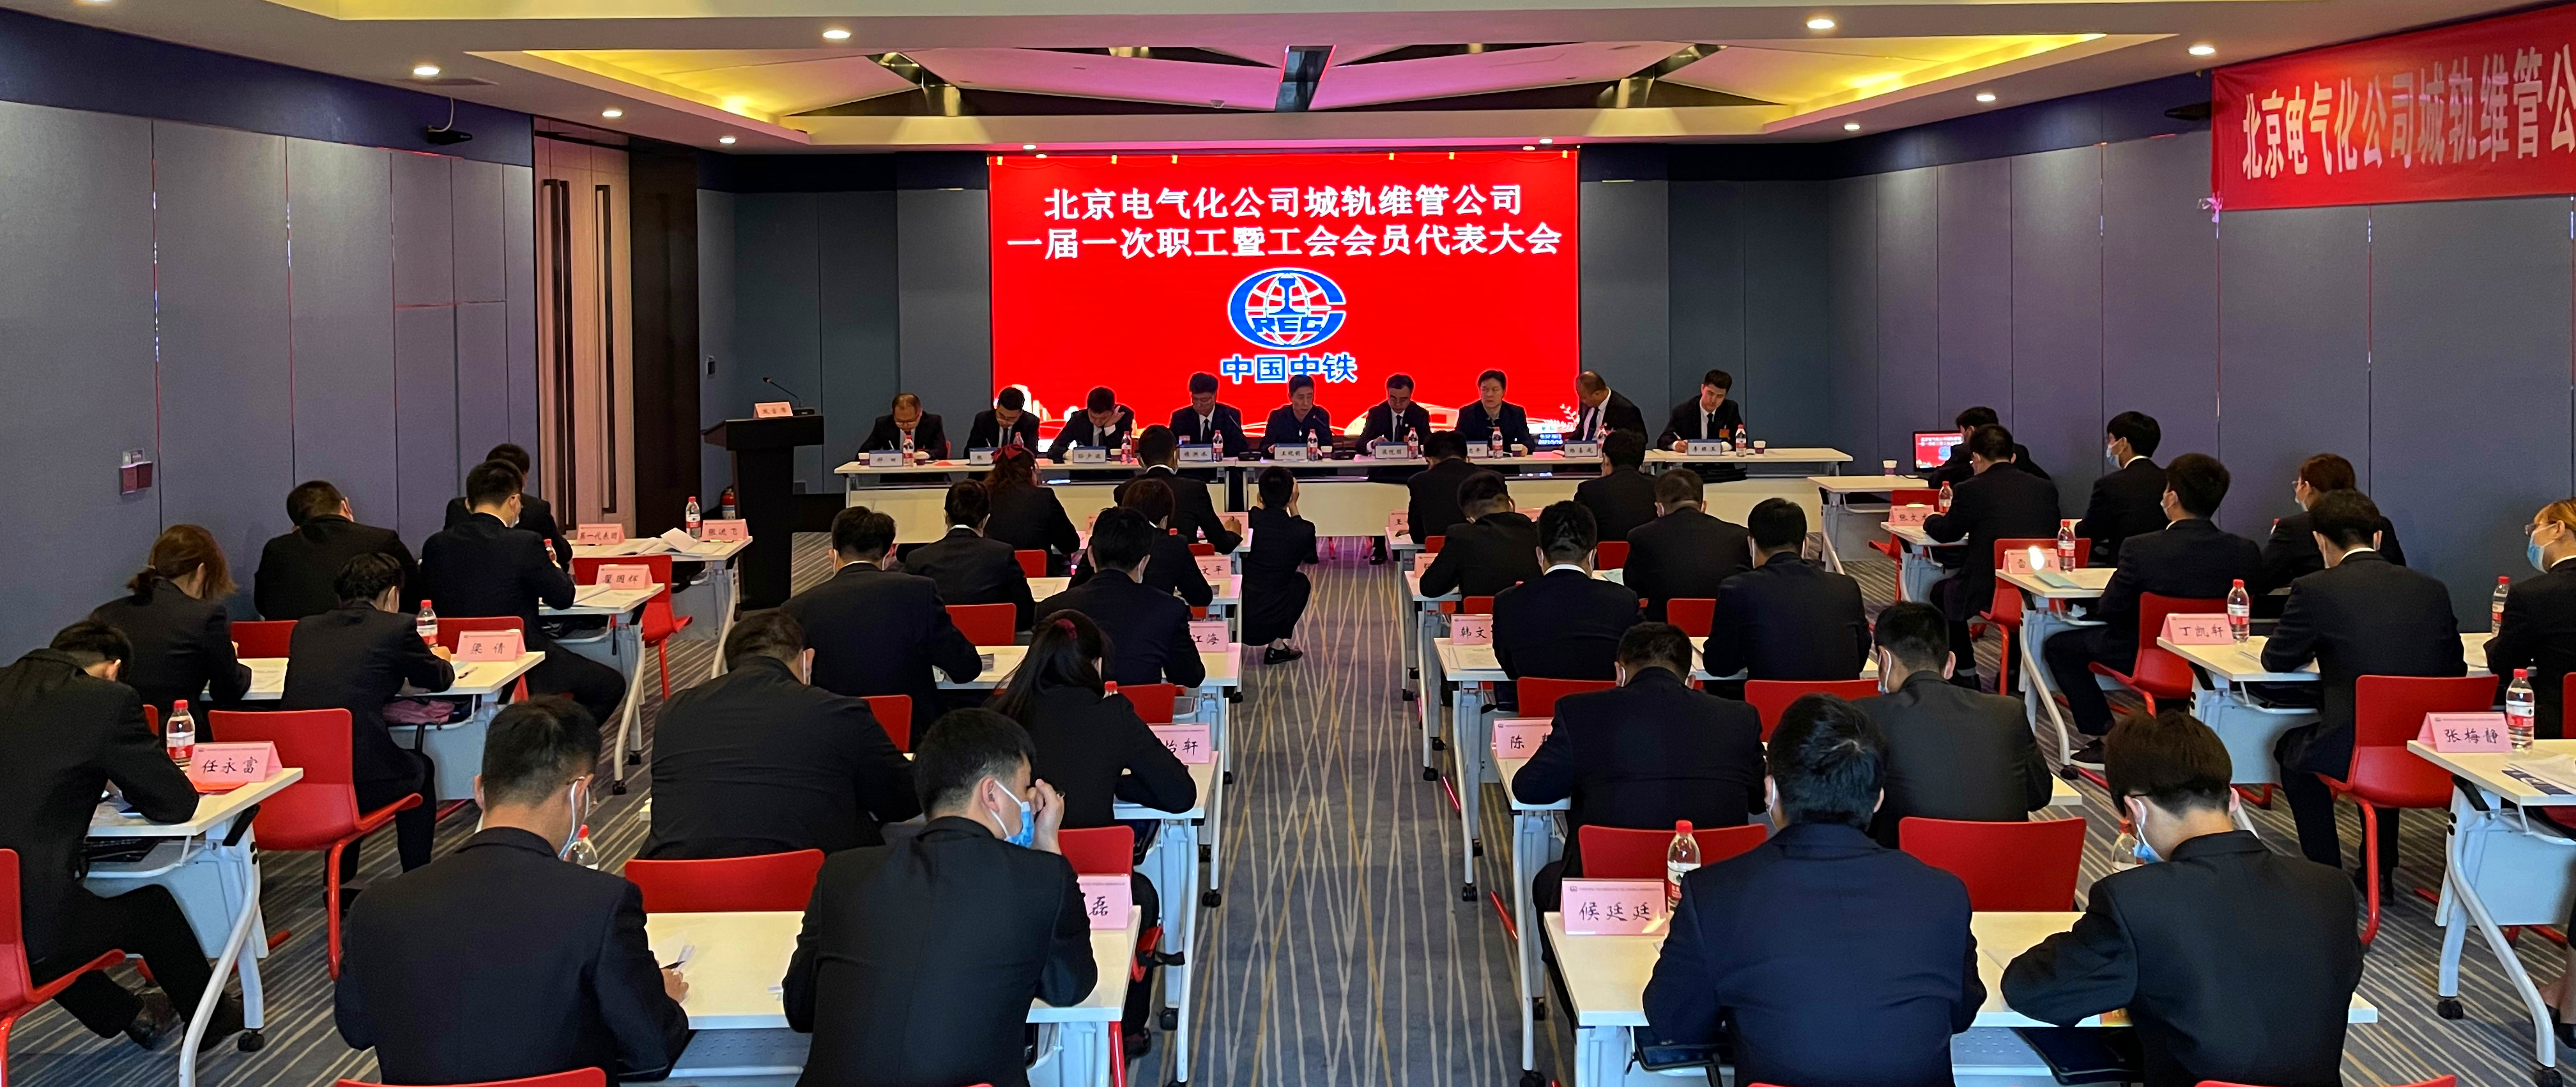 中铁电气化局北京电气化公司城轨维管公司召开一届一次“双代”会